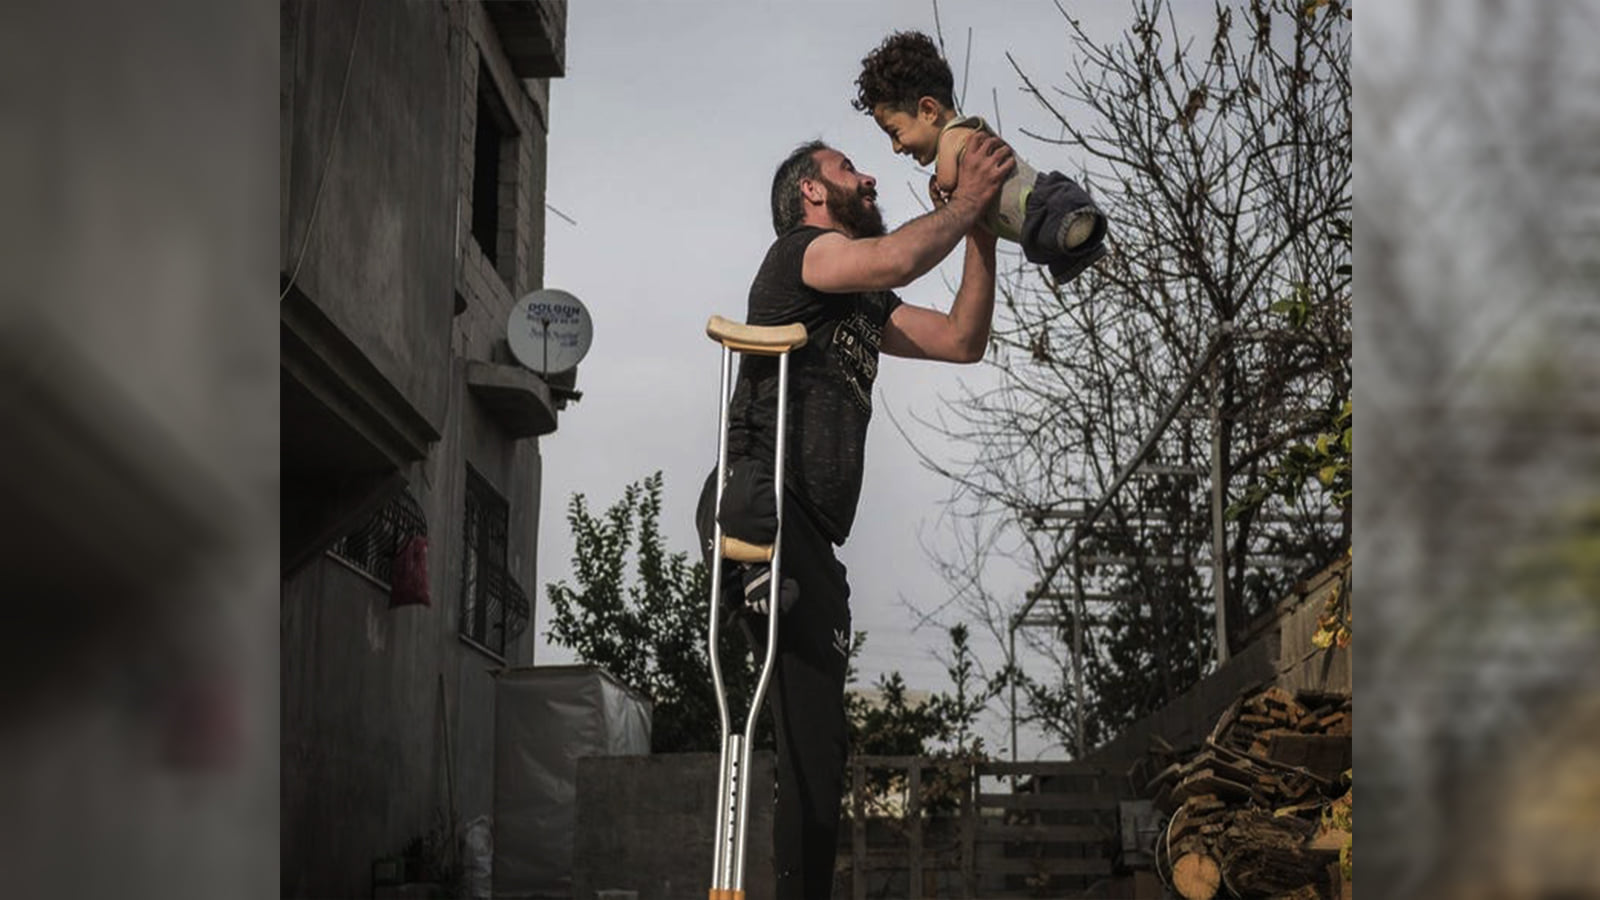 كيف غيرت مسابقة للصور حياة لاجئ سوري وطفله